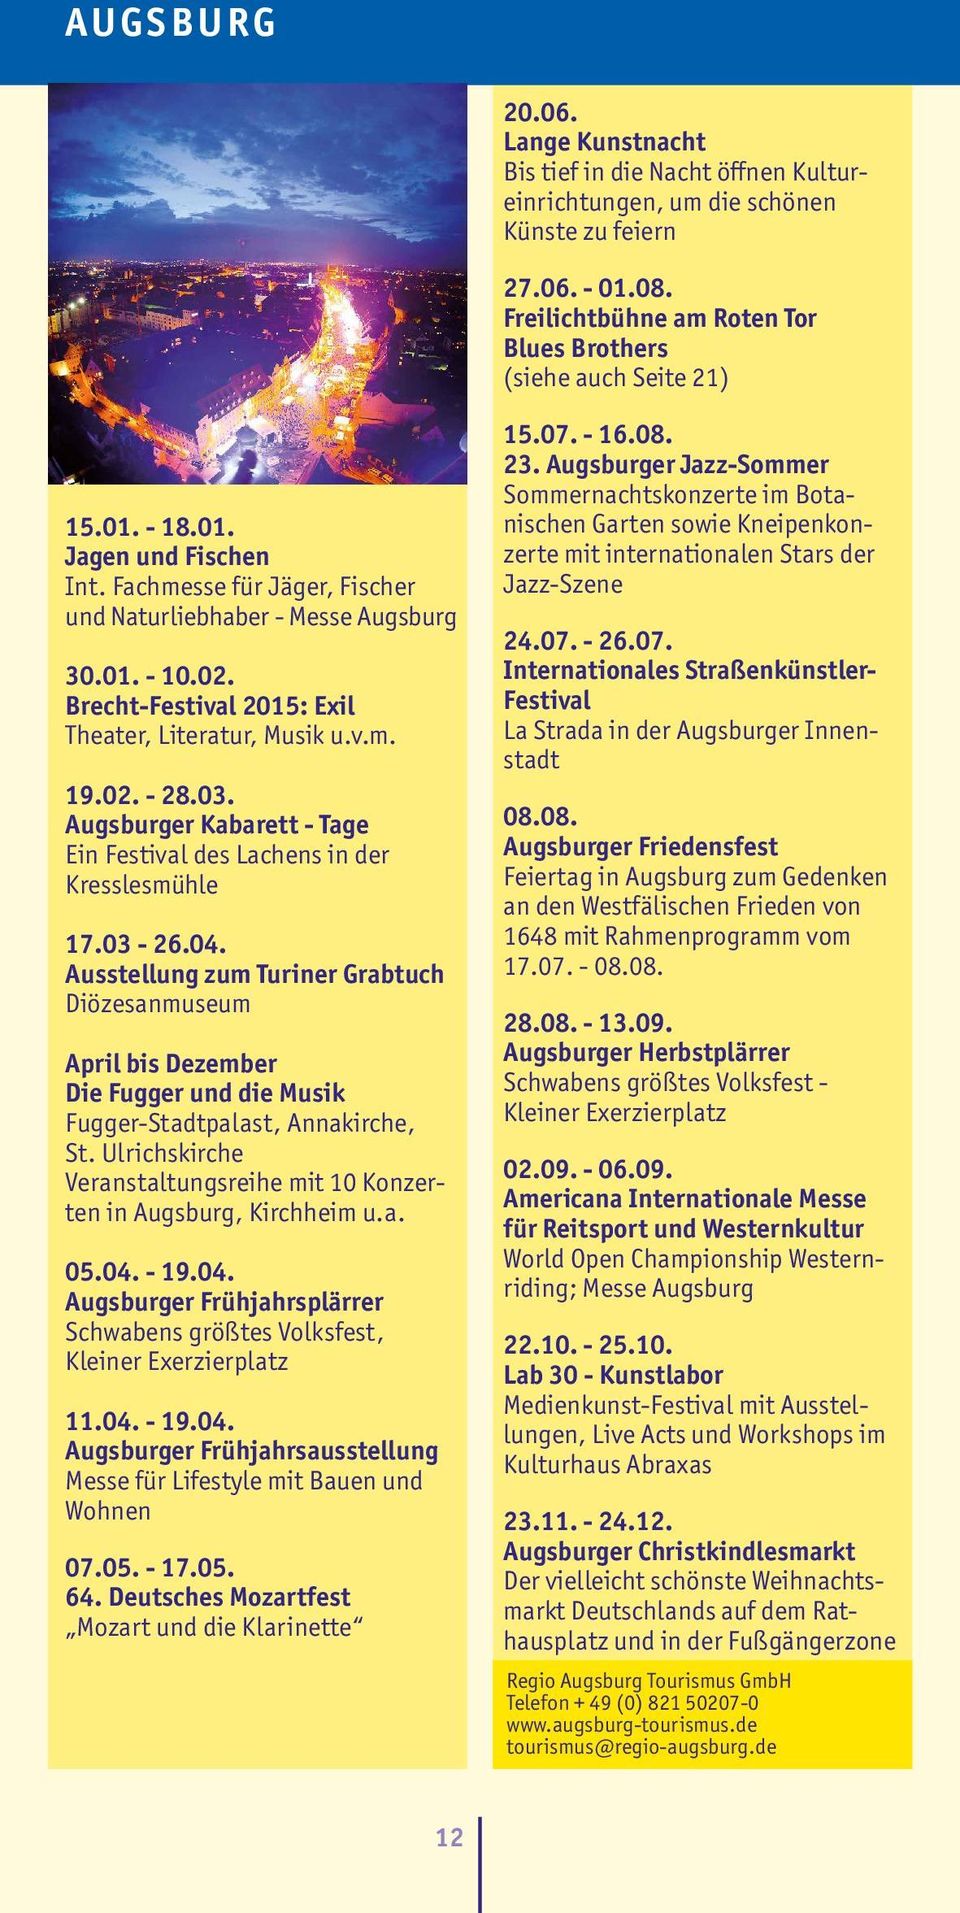 Augsburger Kabarett - Tage Ein Festival des Lachens in der Kresslesmühle 17.03-26.04.